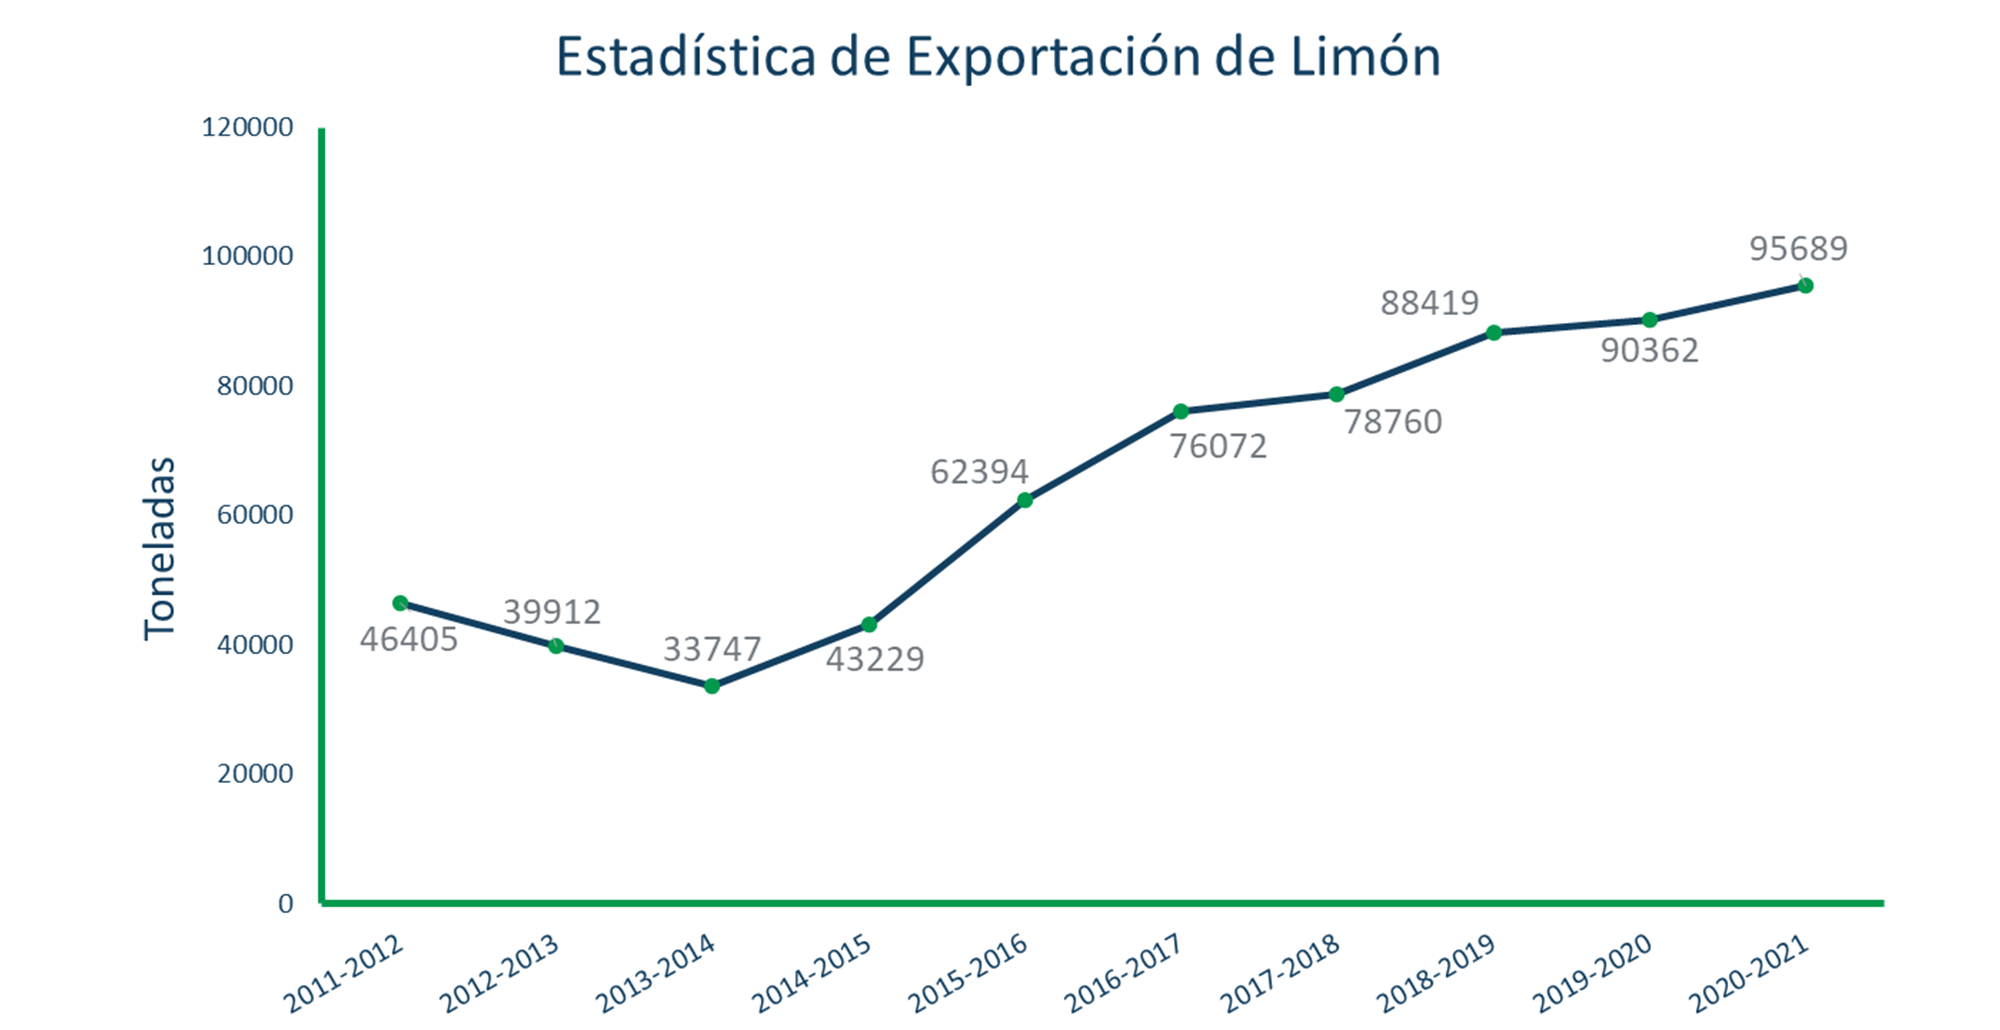 Export statistics